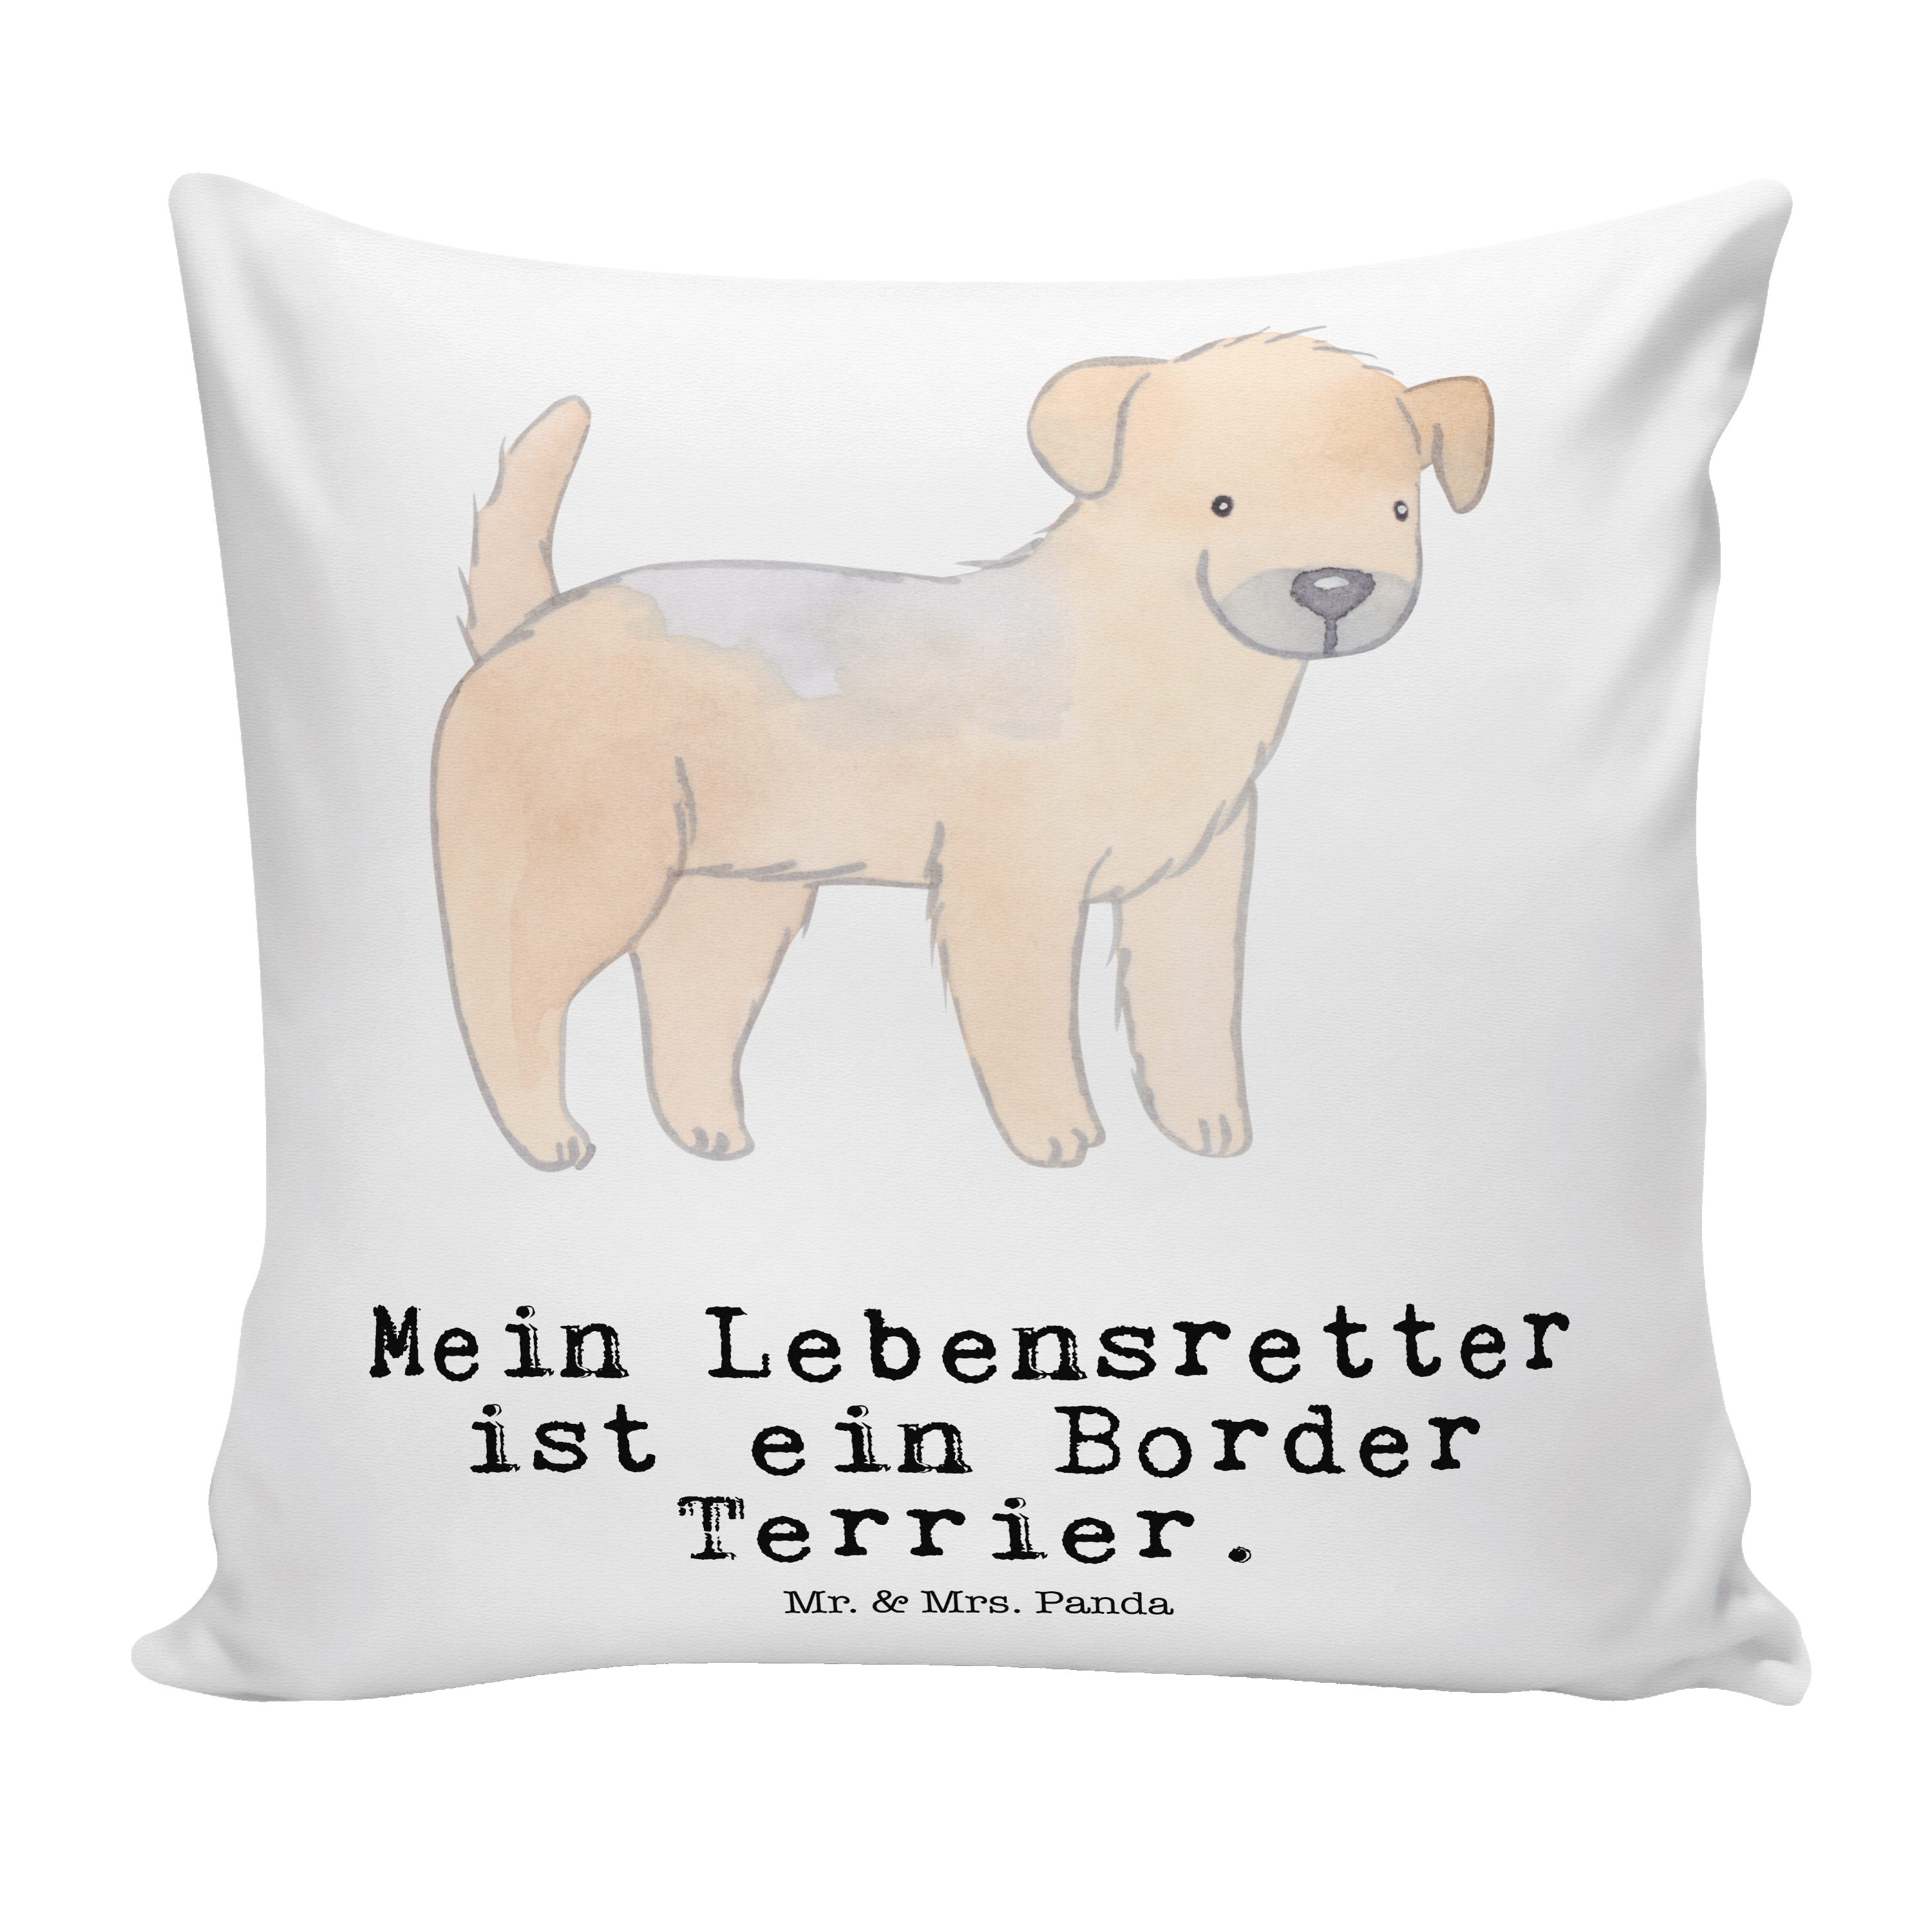 Mr. & Mrs. Panda Dekokissen Border Terrier Lebensretter - Weiß - Geschenk, Motivkissen, Tierfreun